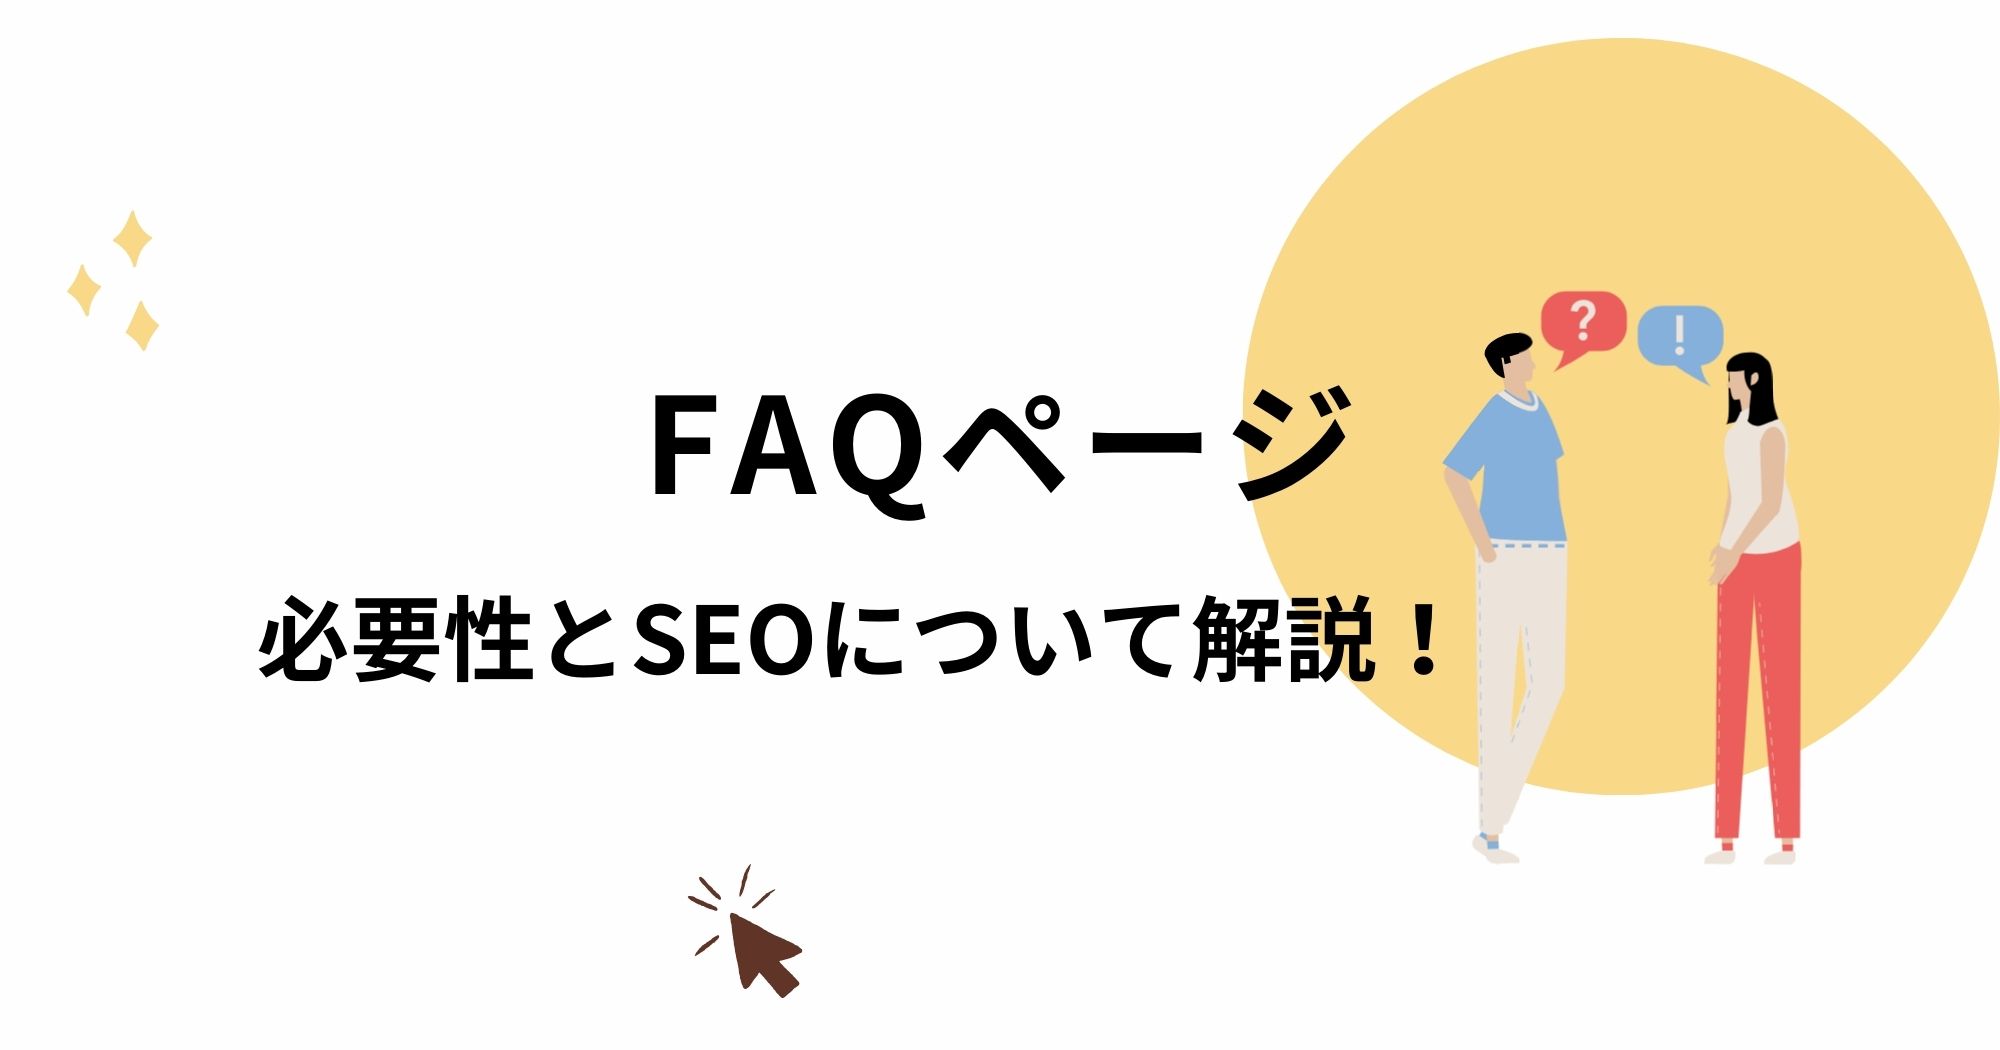 FAQページは作っておいた方がいい理由とSEO対策について。